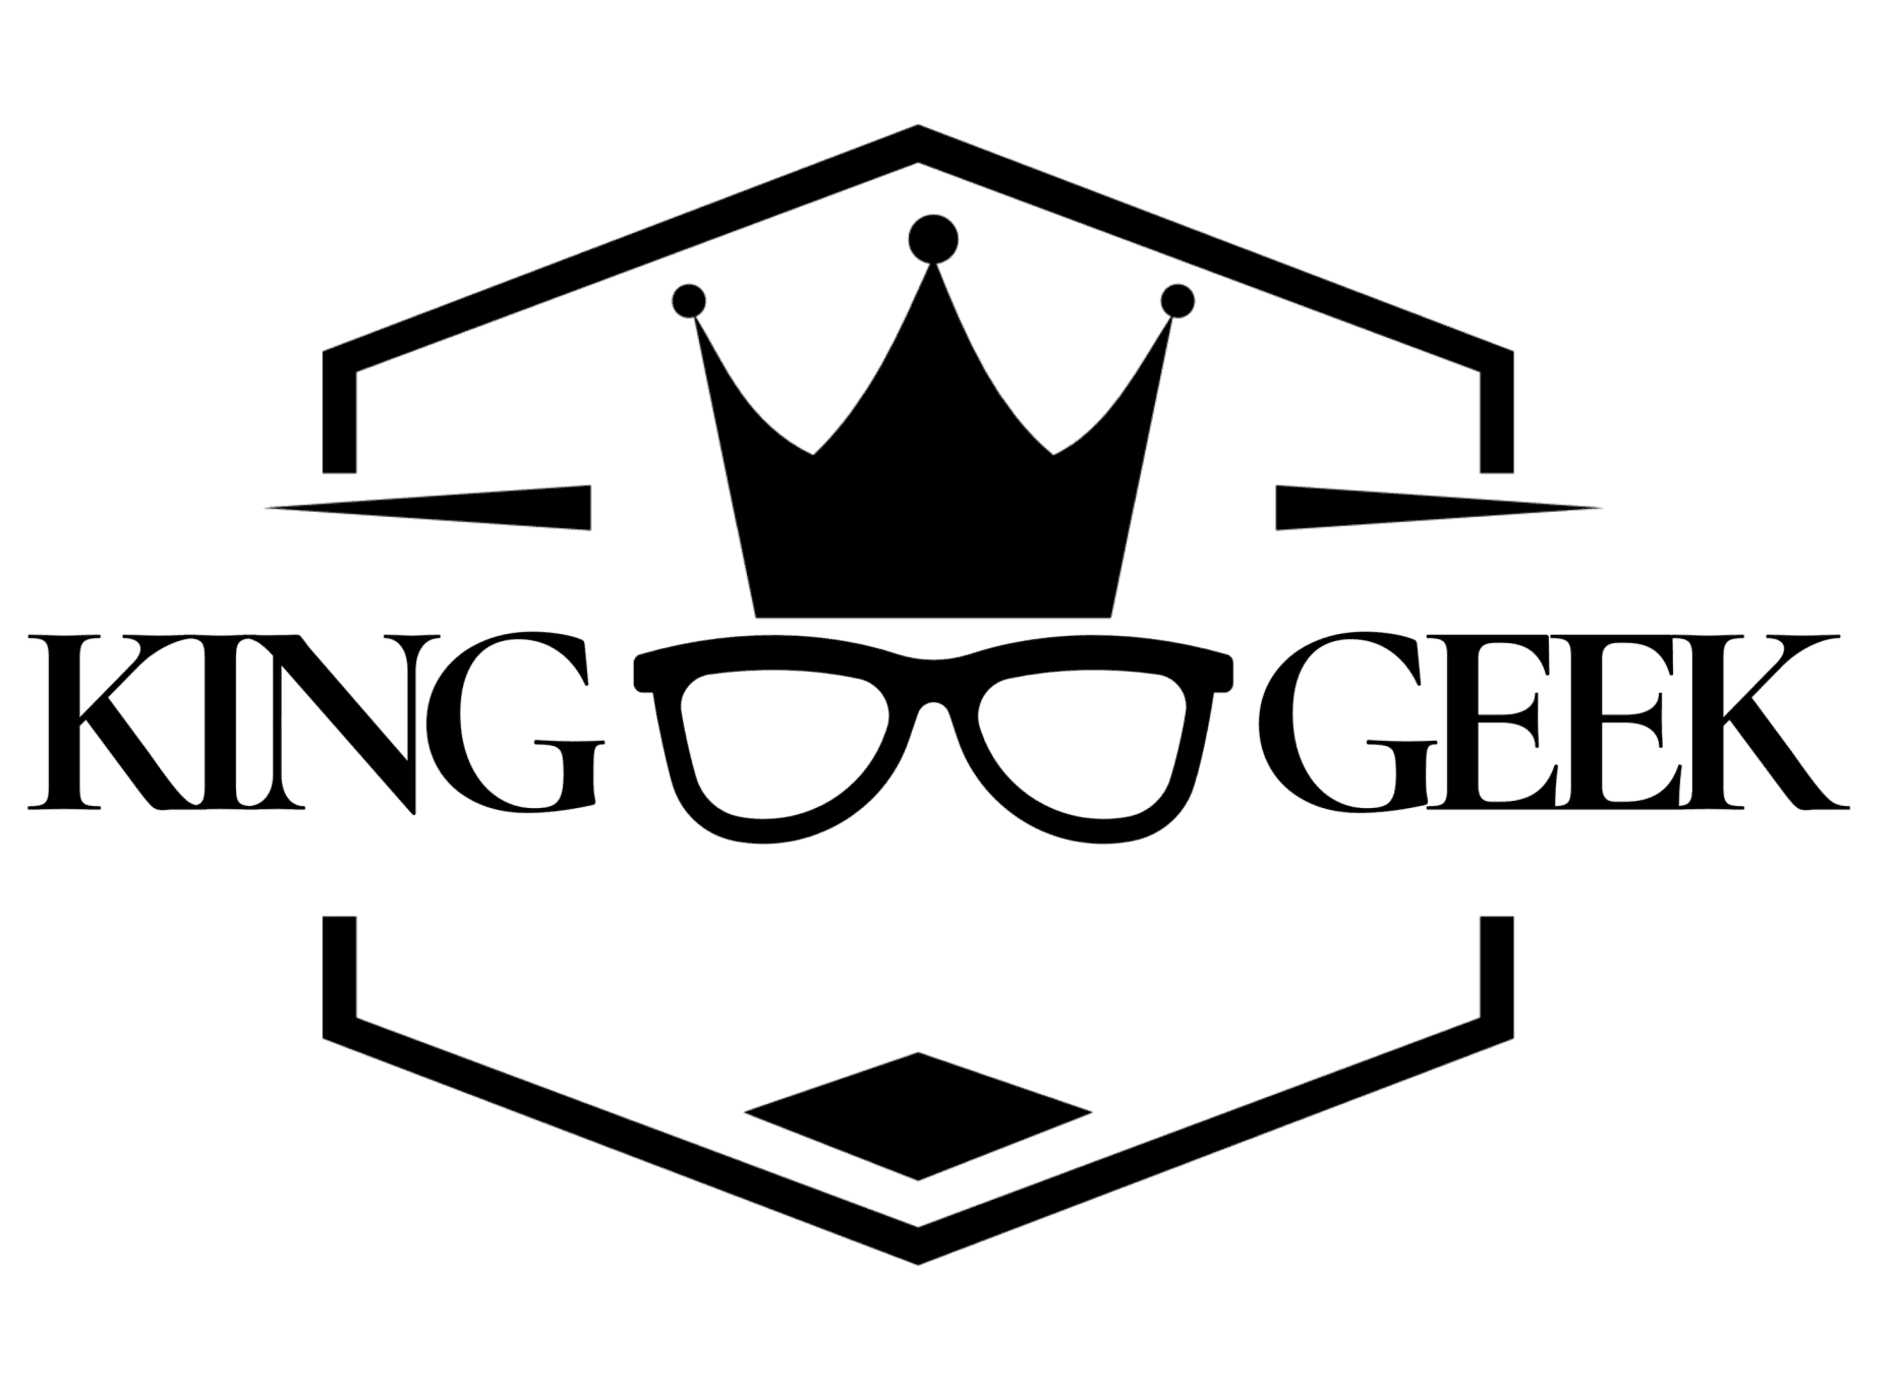 King Geek